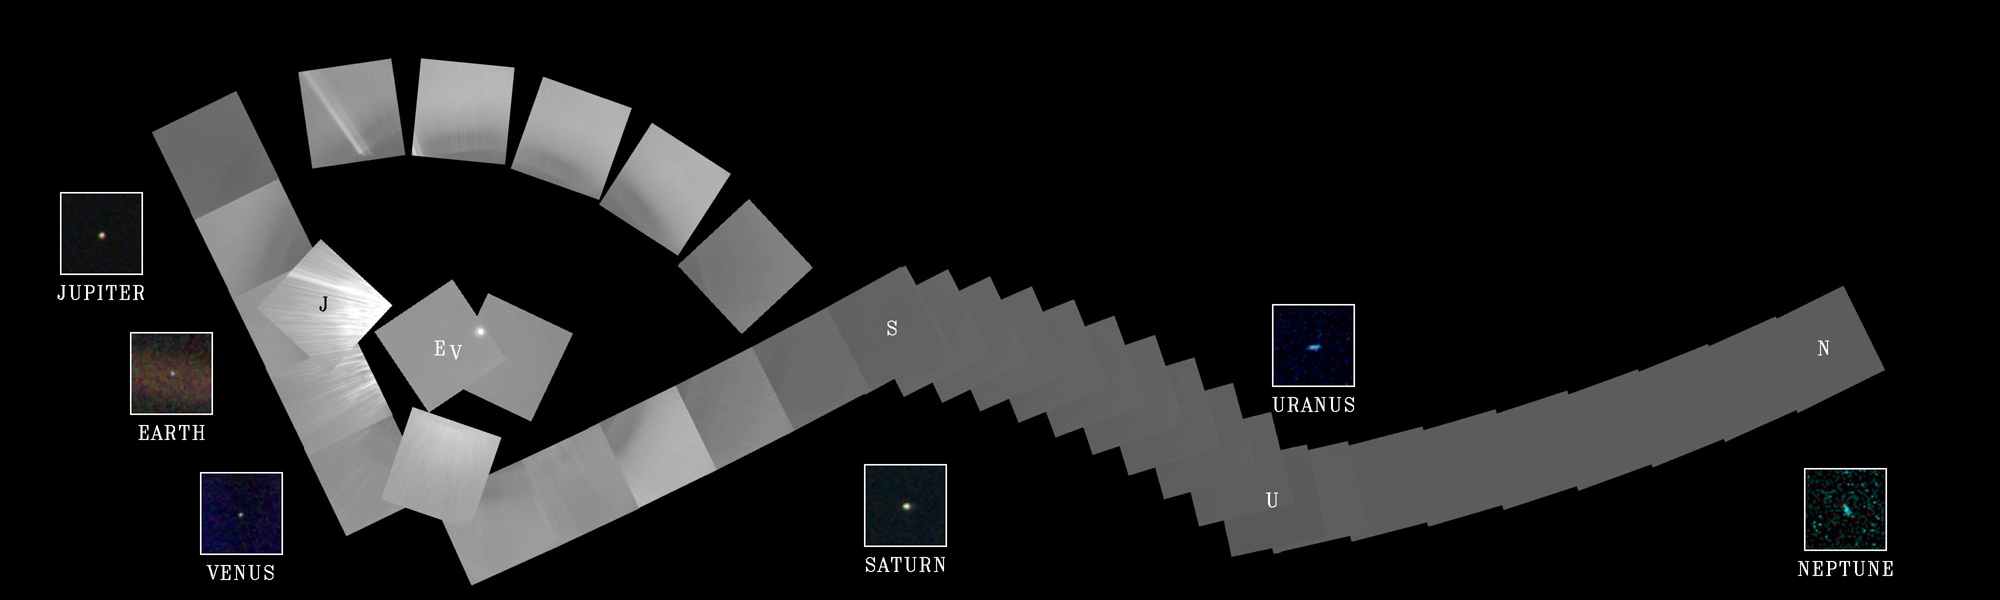 Uma coleção de imagens agrupadas representando o sistema solar.